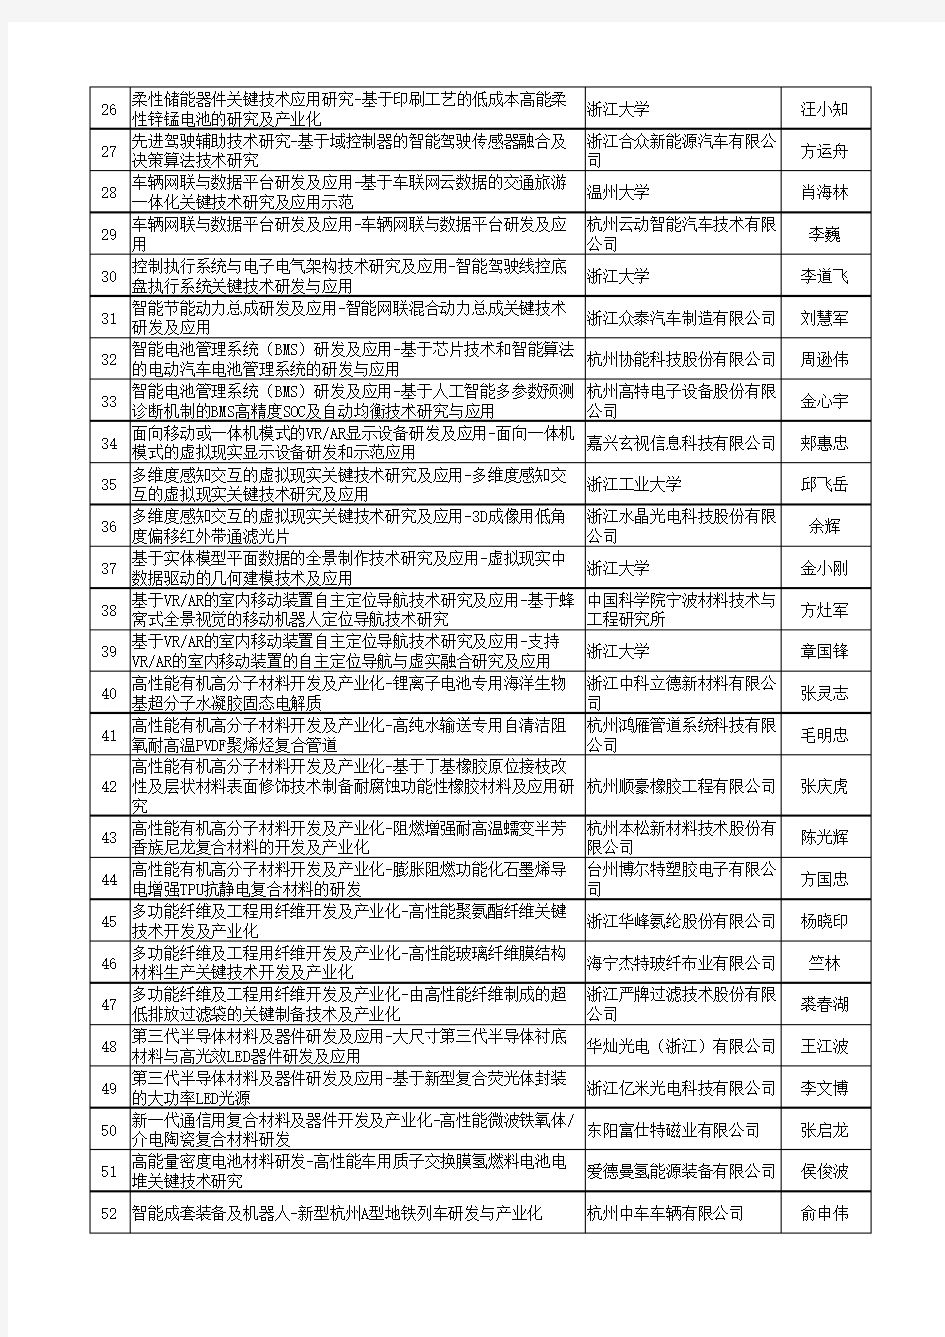 2018年度浙江省省级重点研发计划拟入库项目清单